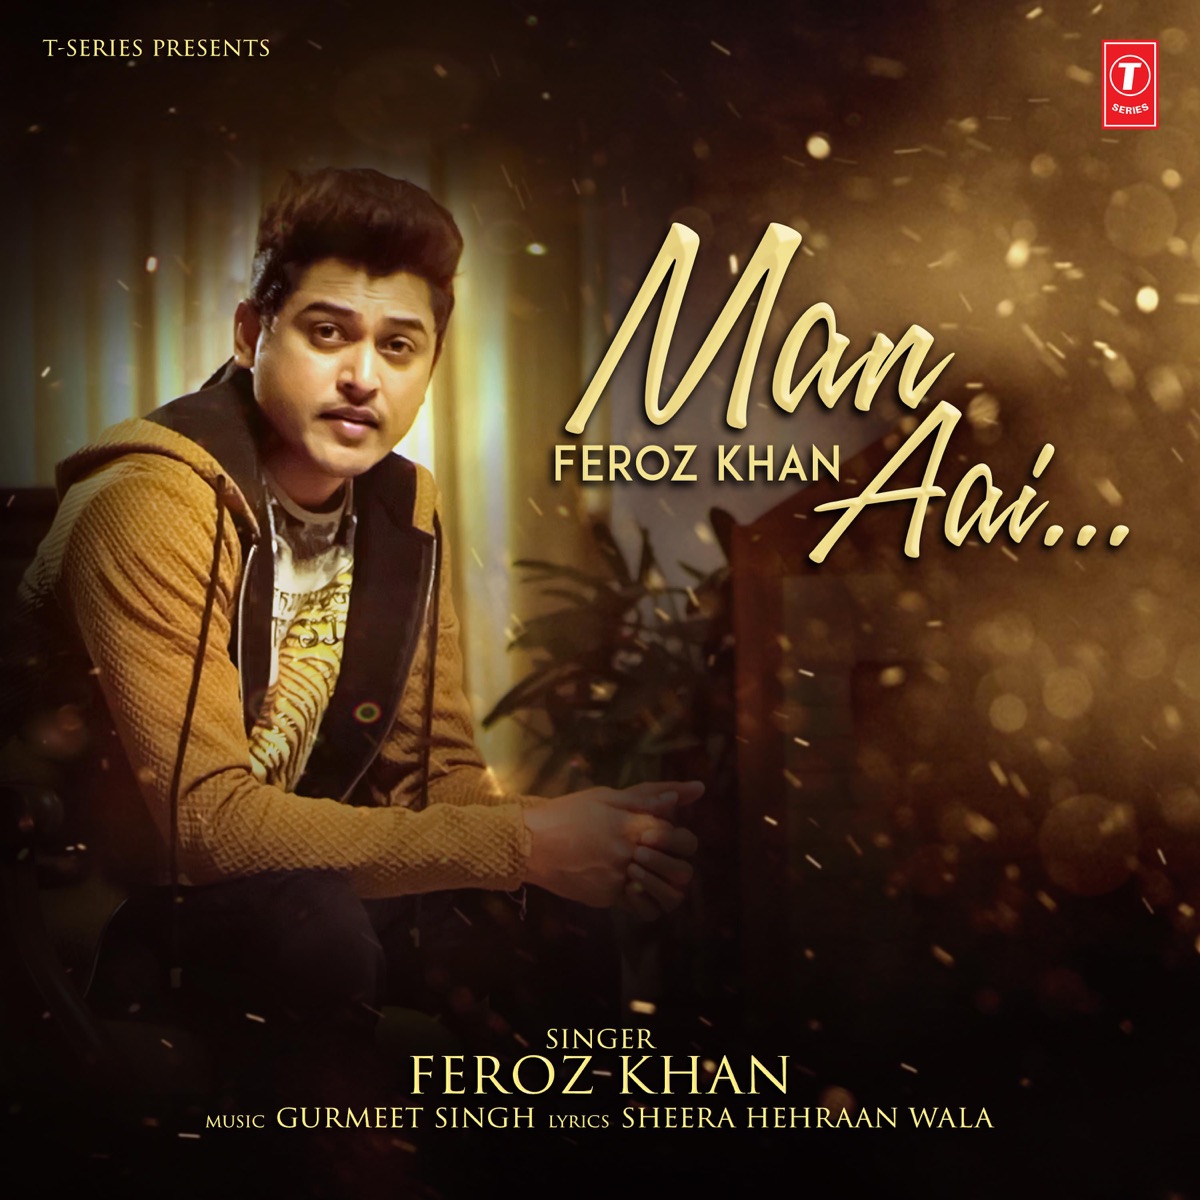 Feroz khan new song ishq khudai